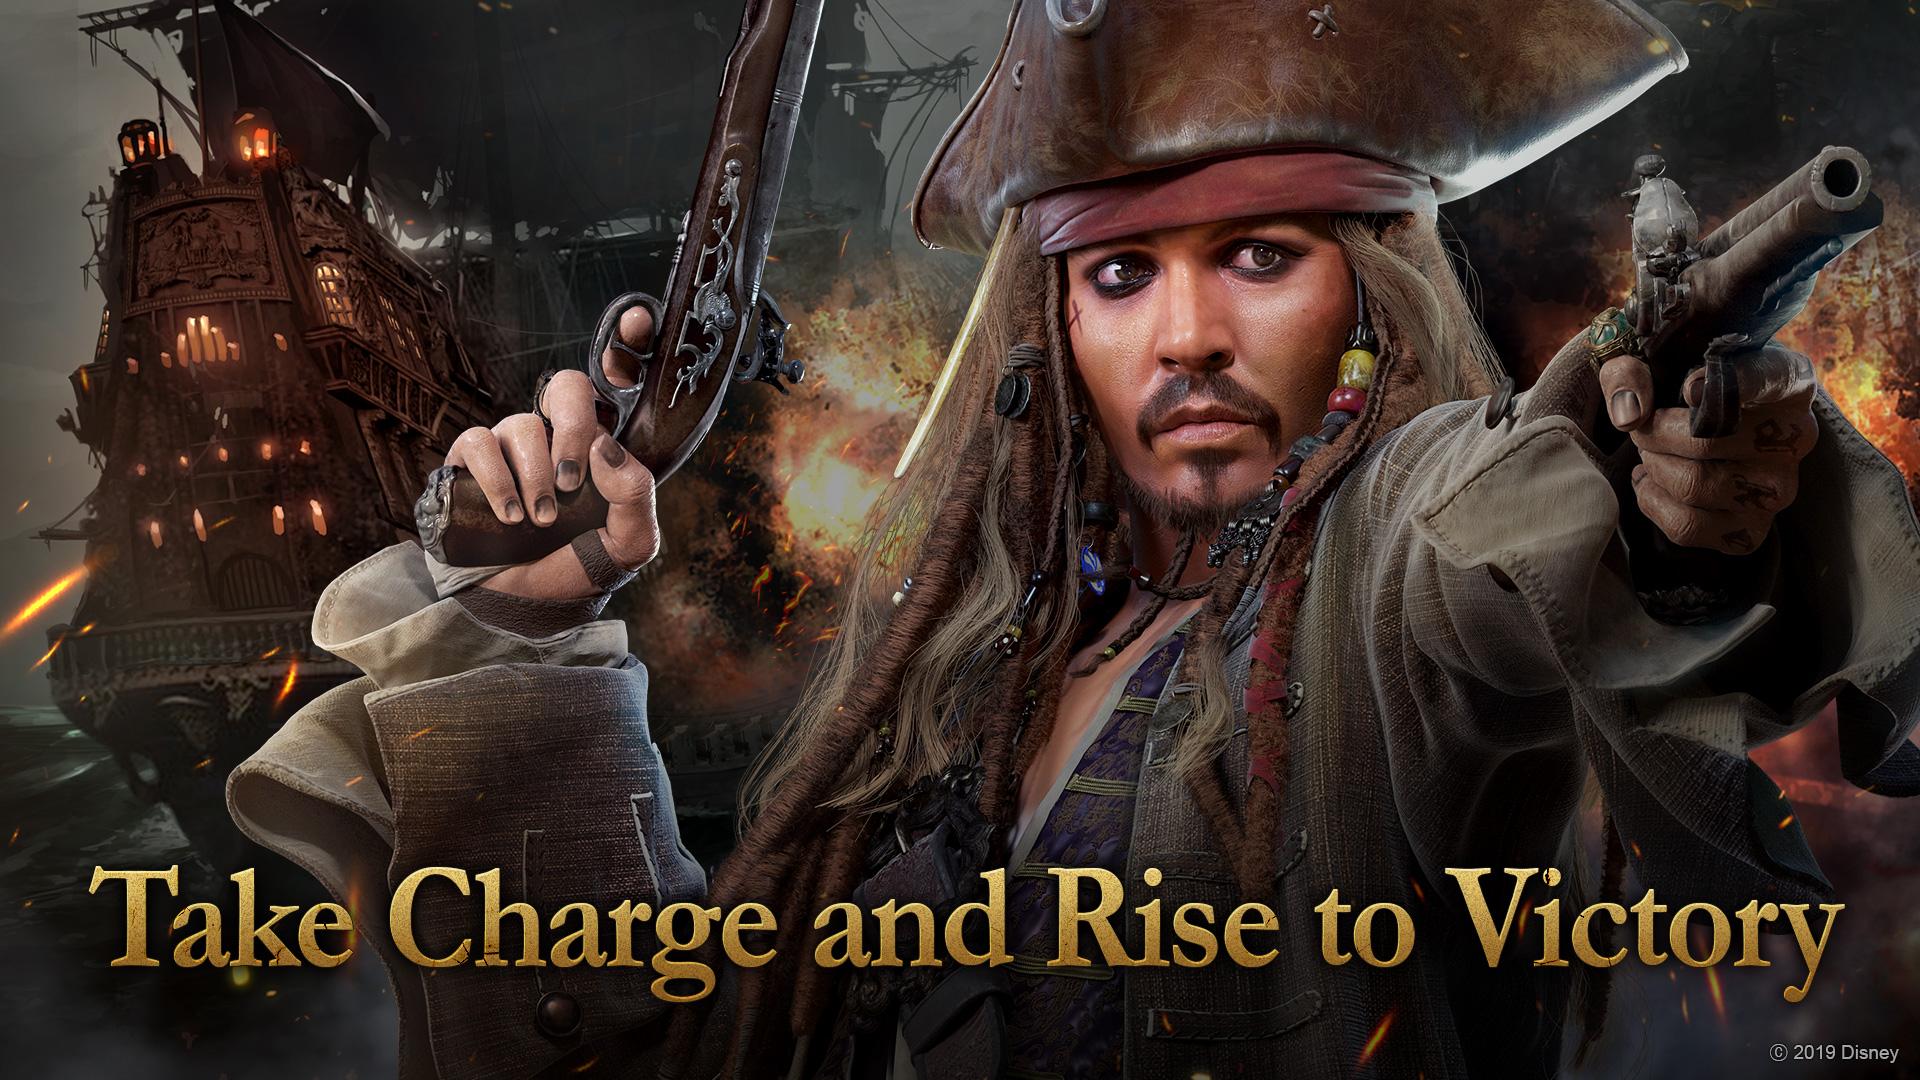 Descargar fondos de escritorio de Piratas Del Caribe: Tow HD